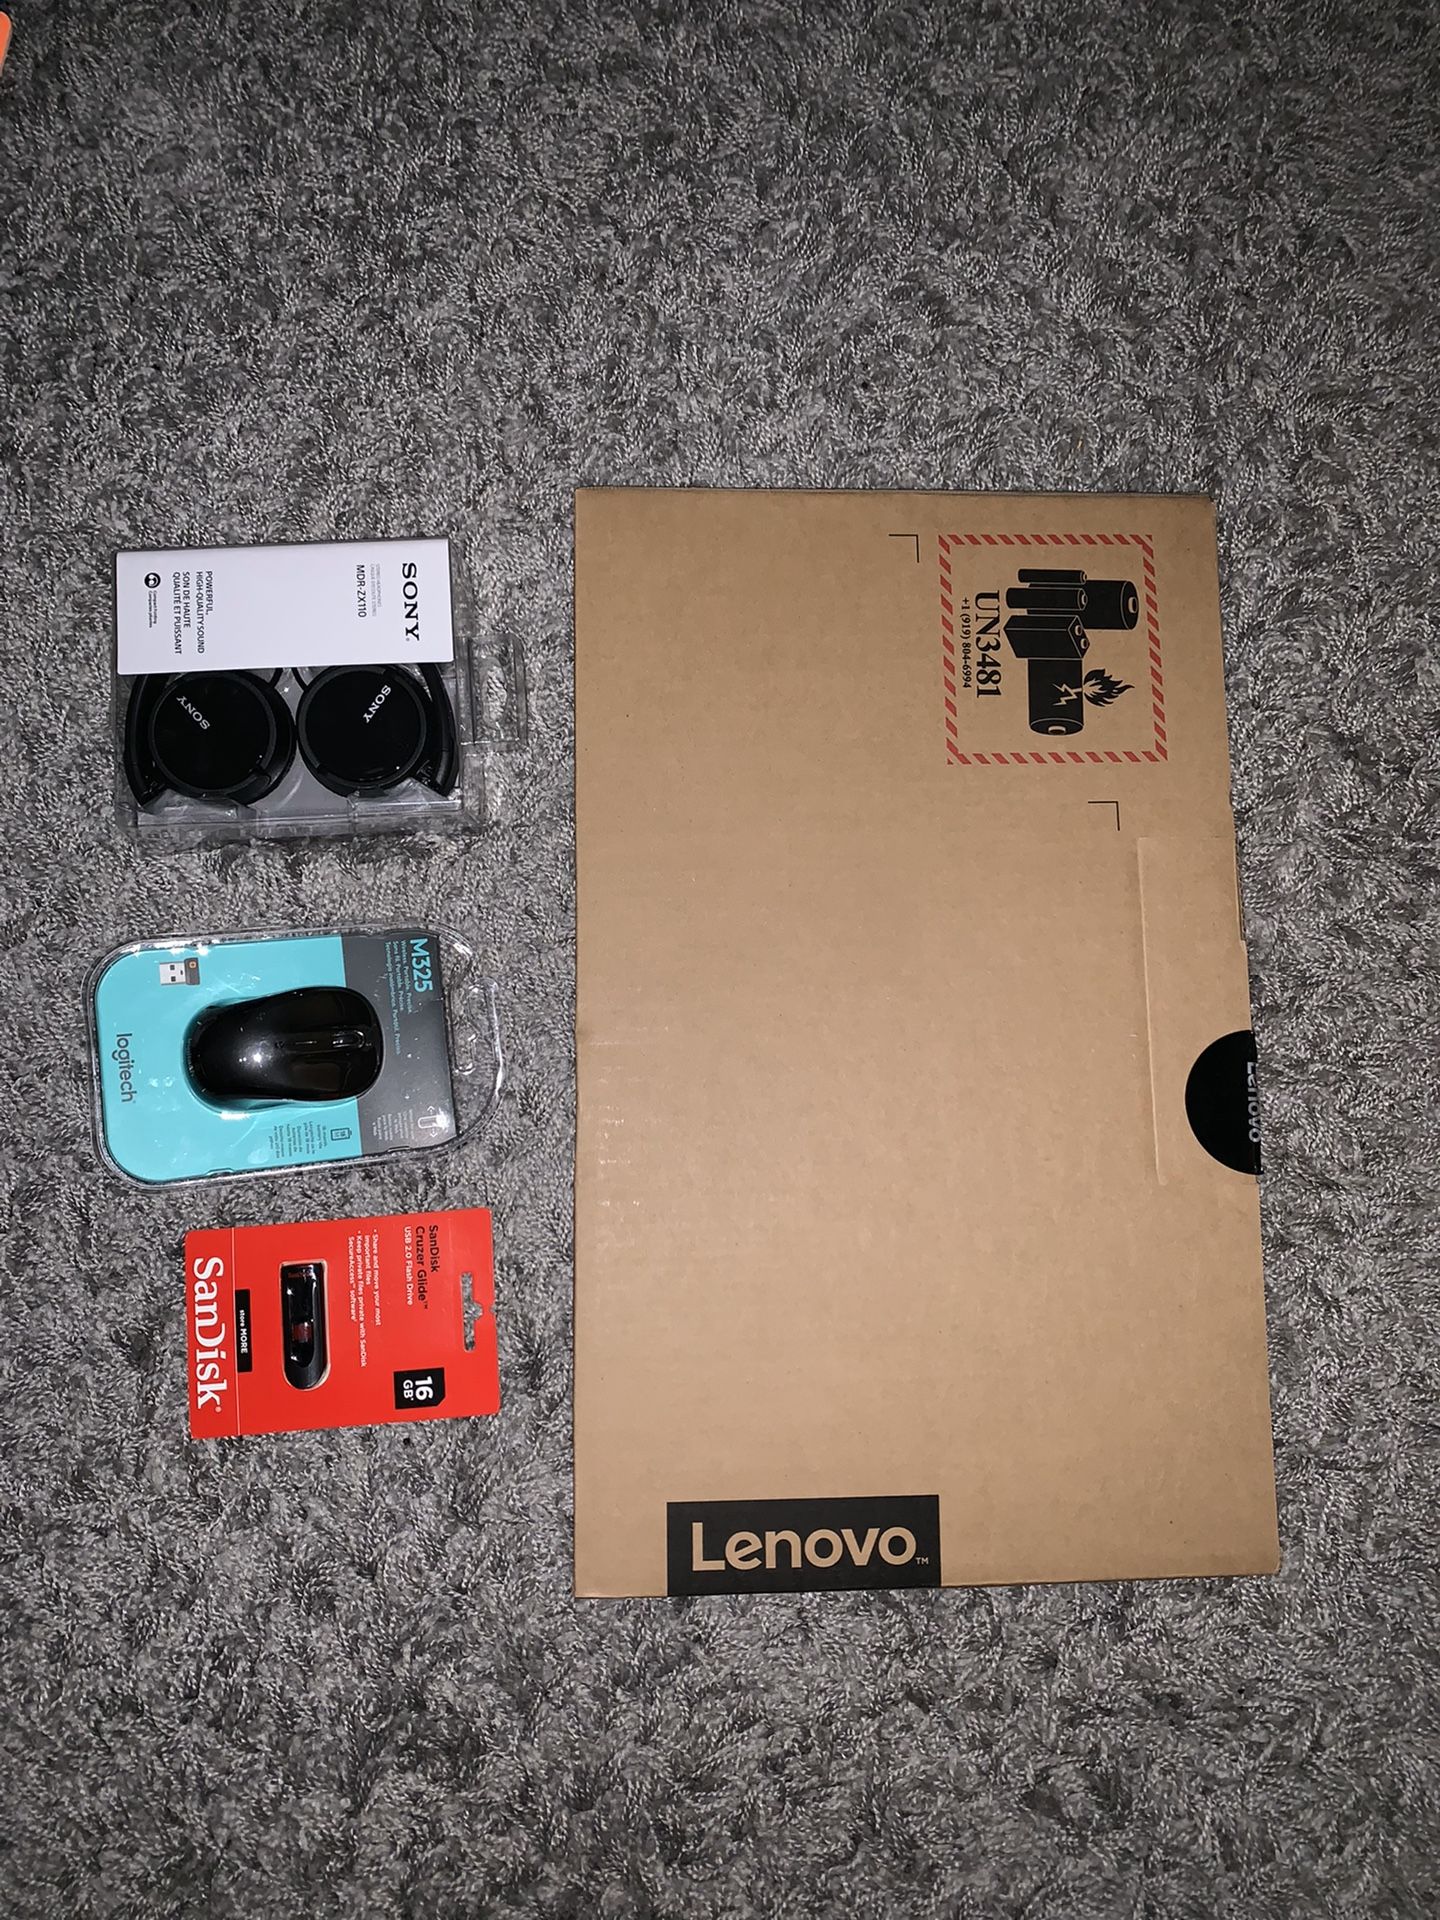 Lenovo Computer + Accessories